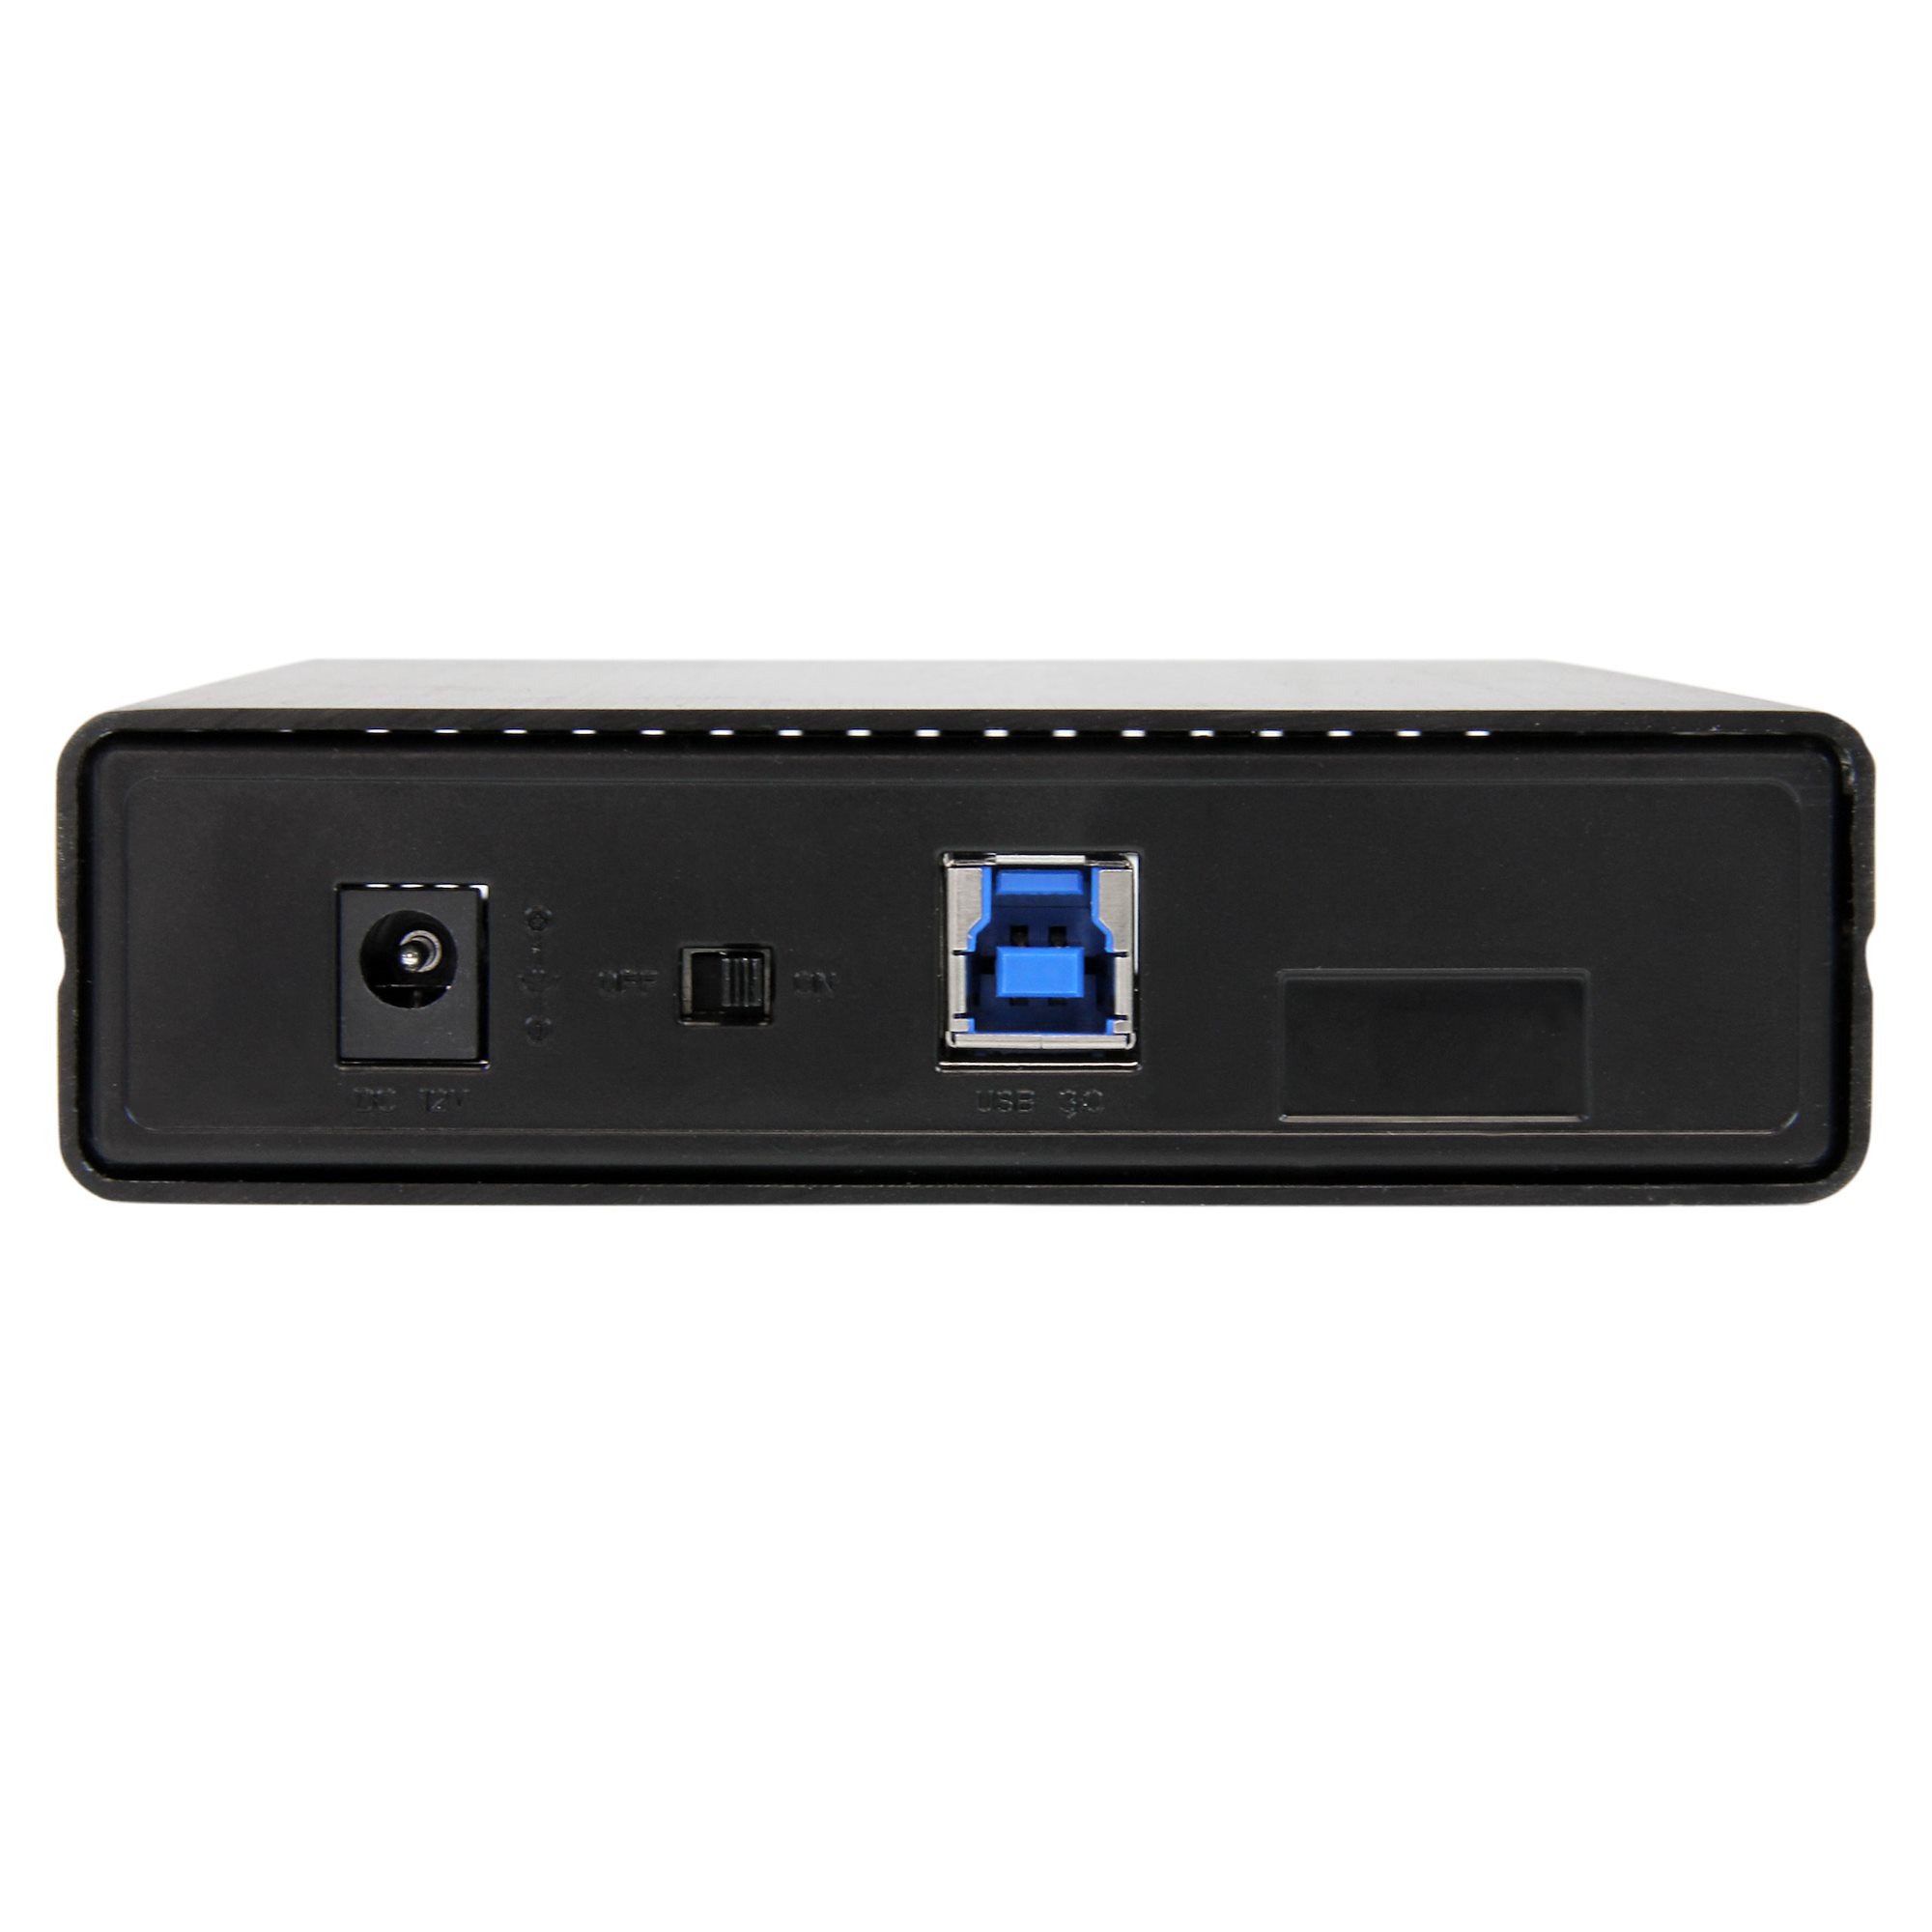 3.5 USB 3 SATA SSD HDD Enclosure - UASP - External Drive